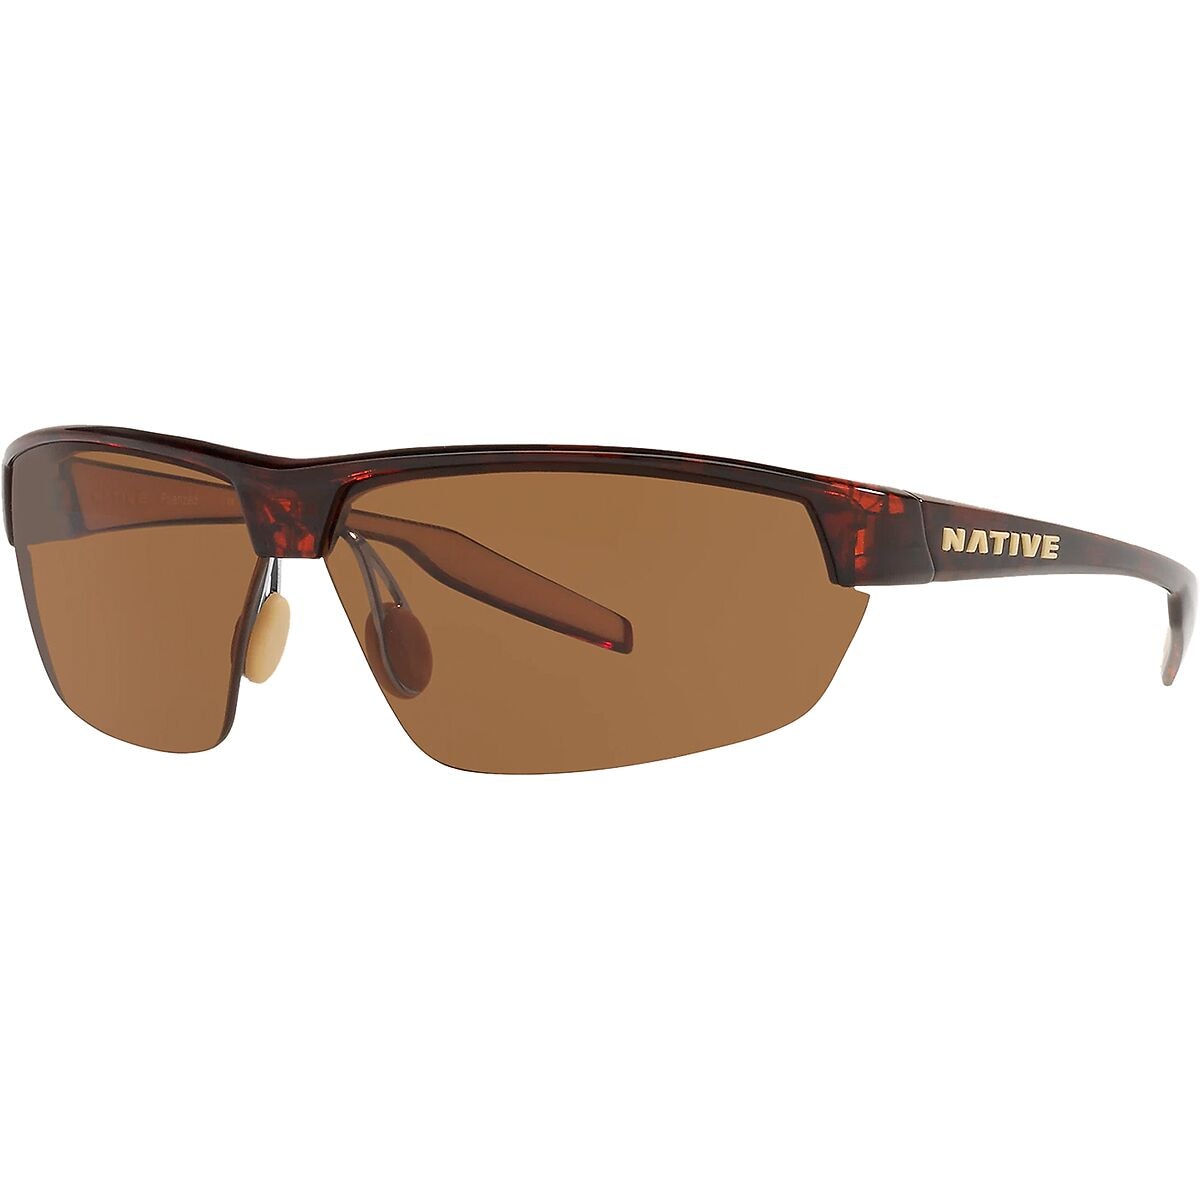 Native Eyewear Hardtop Ultra Polarized Sunglasses - Men's